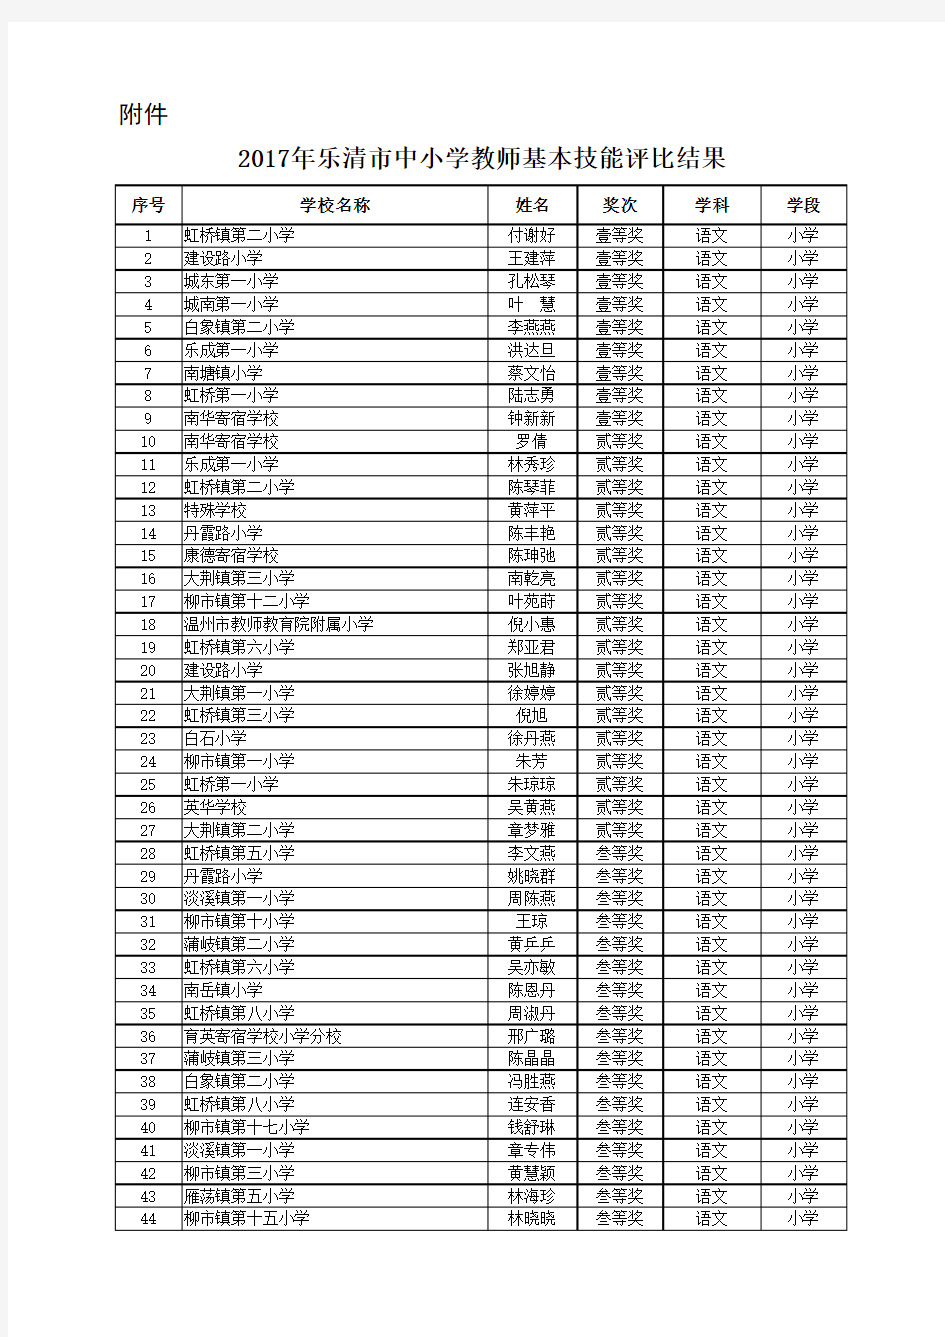 乐教工〔2018〕2号附件乐清市中小学教师基本技能评比结果